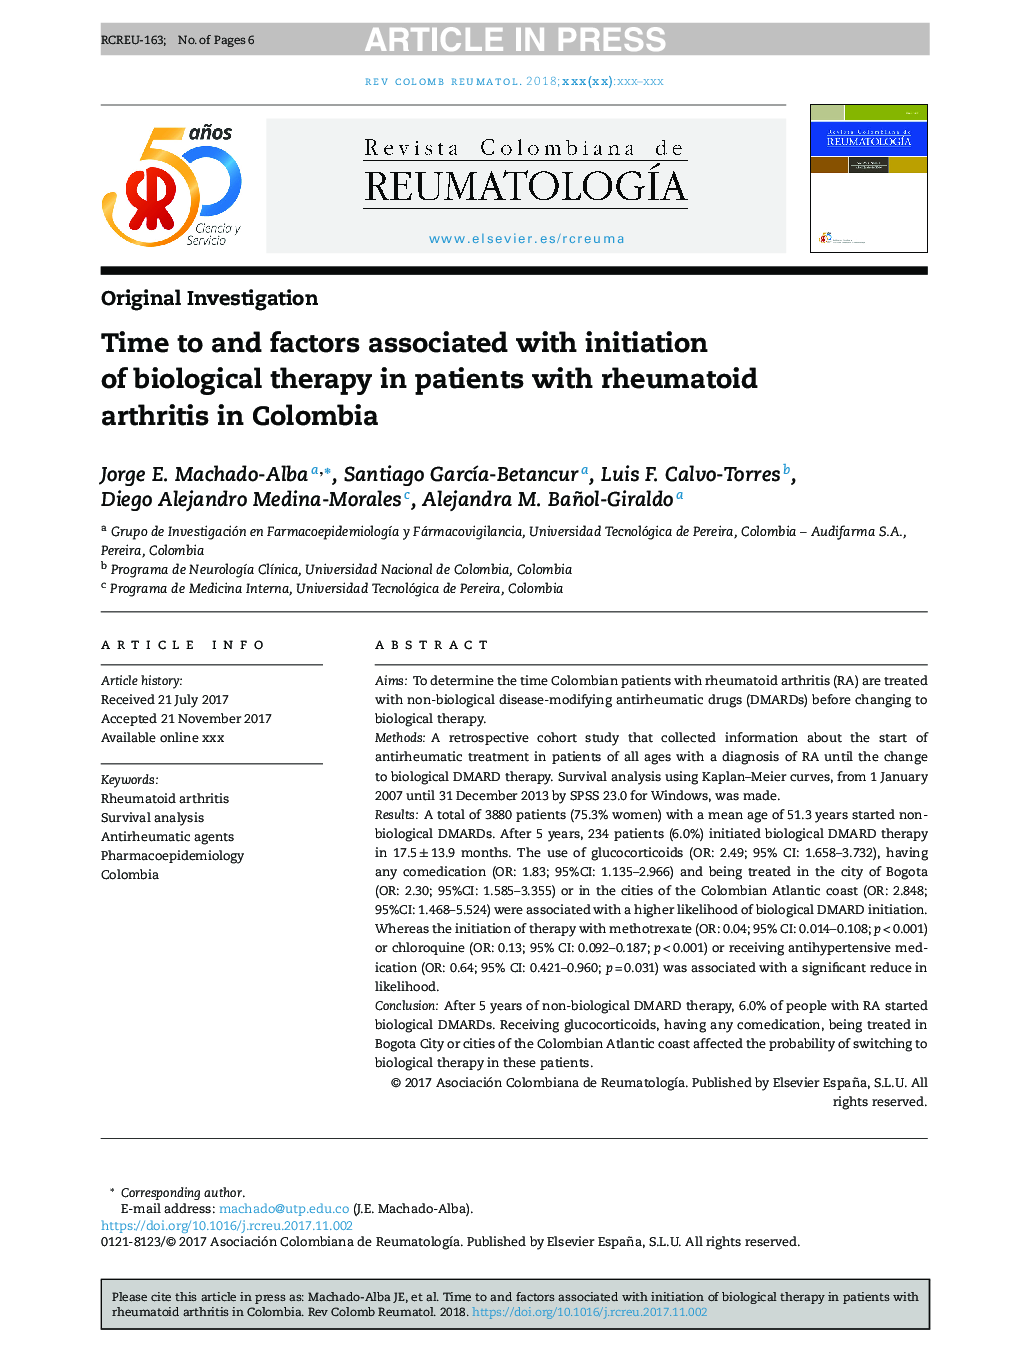 زمان و عوامل مرتبط با شروع درمان بیولوژیک در بیماران مبتلا به آرتریت روماتوئید در کلمبیا 